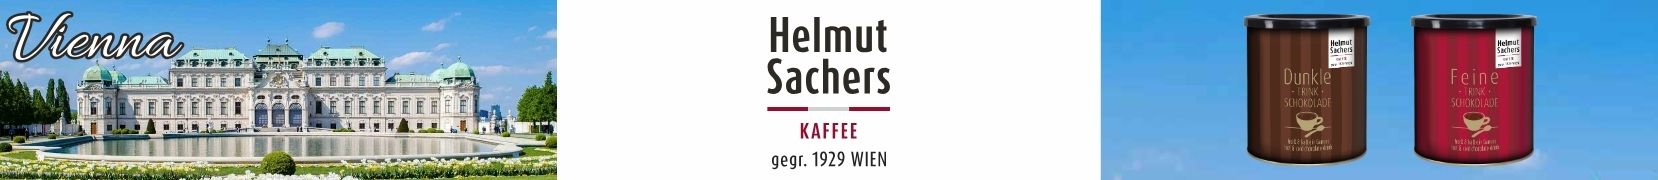 Helmut Sachers Cocoa